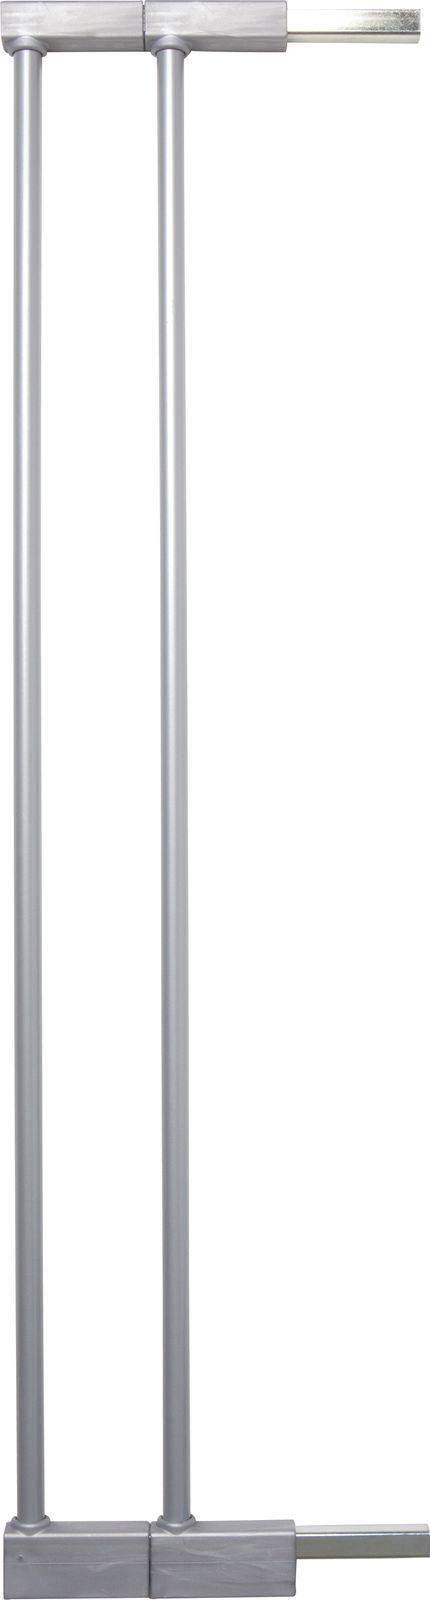 Extension barrière sécurité métal, 2x7cm